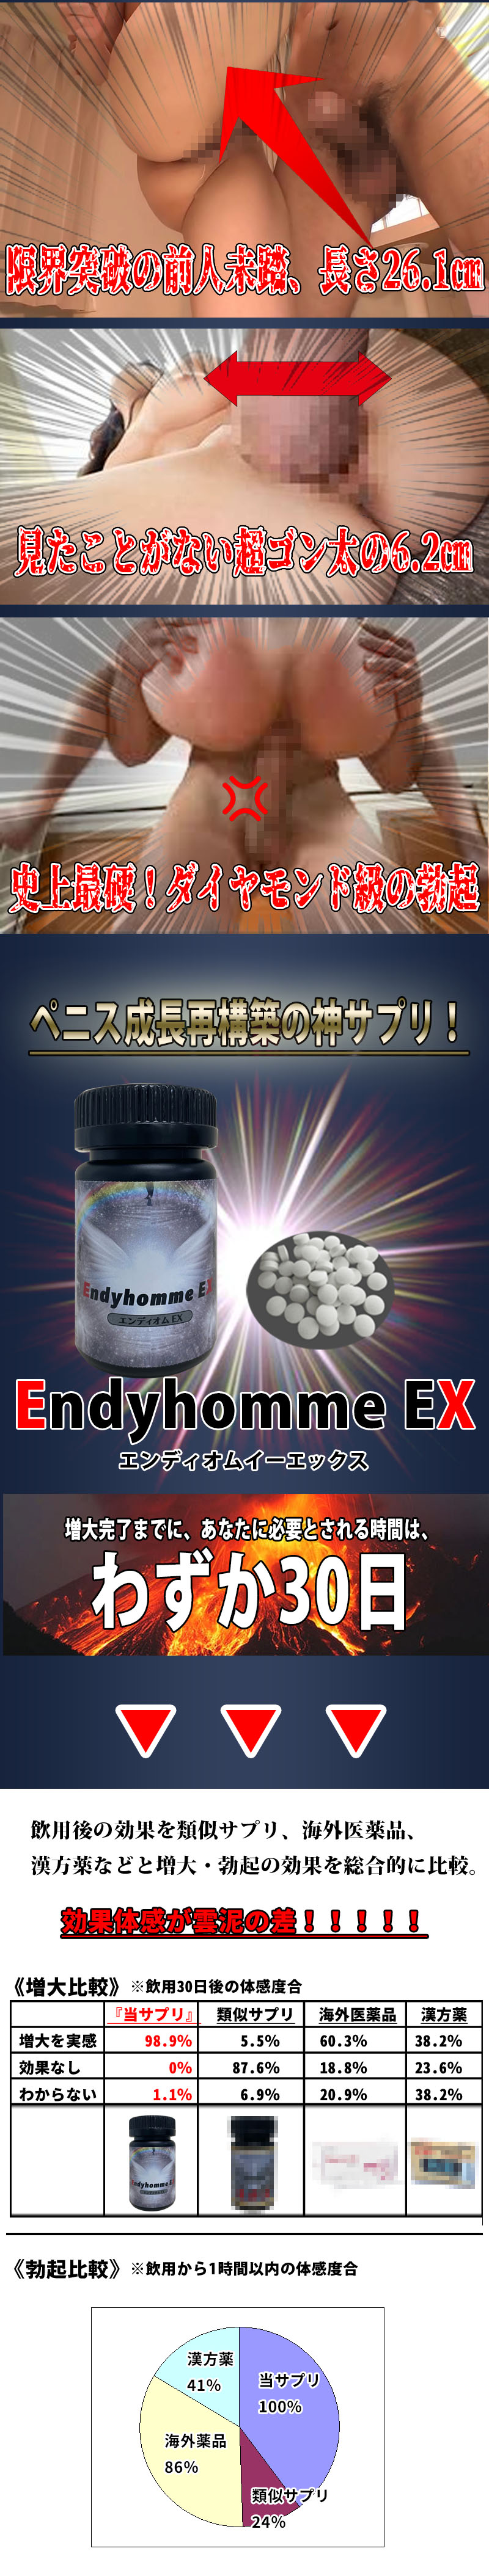 Endyhomeme EX（エンディオムイーエックス）